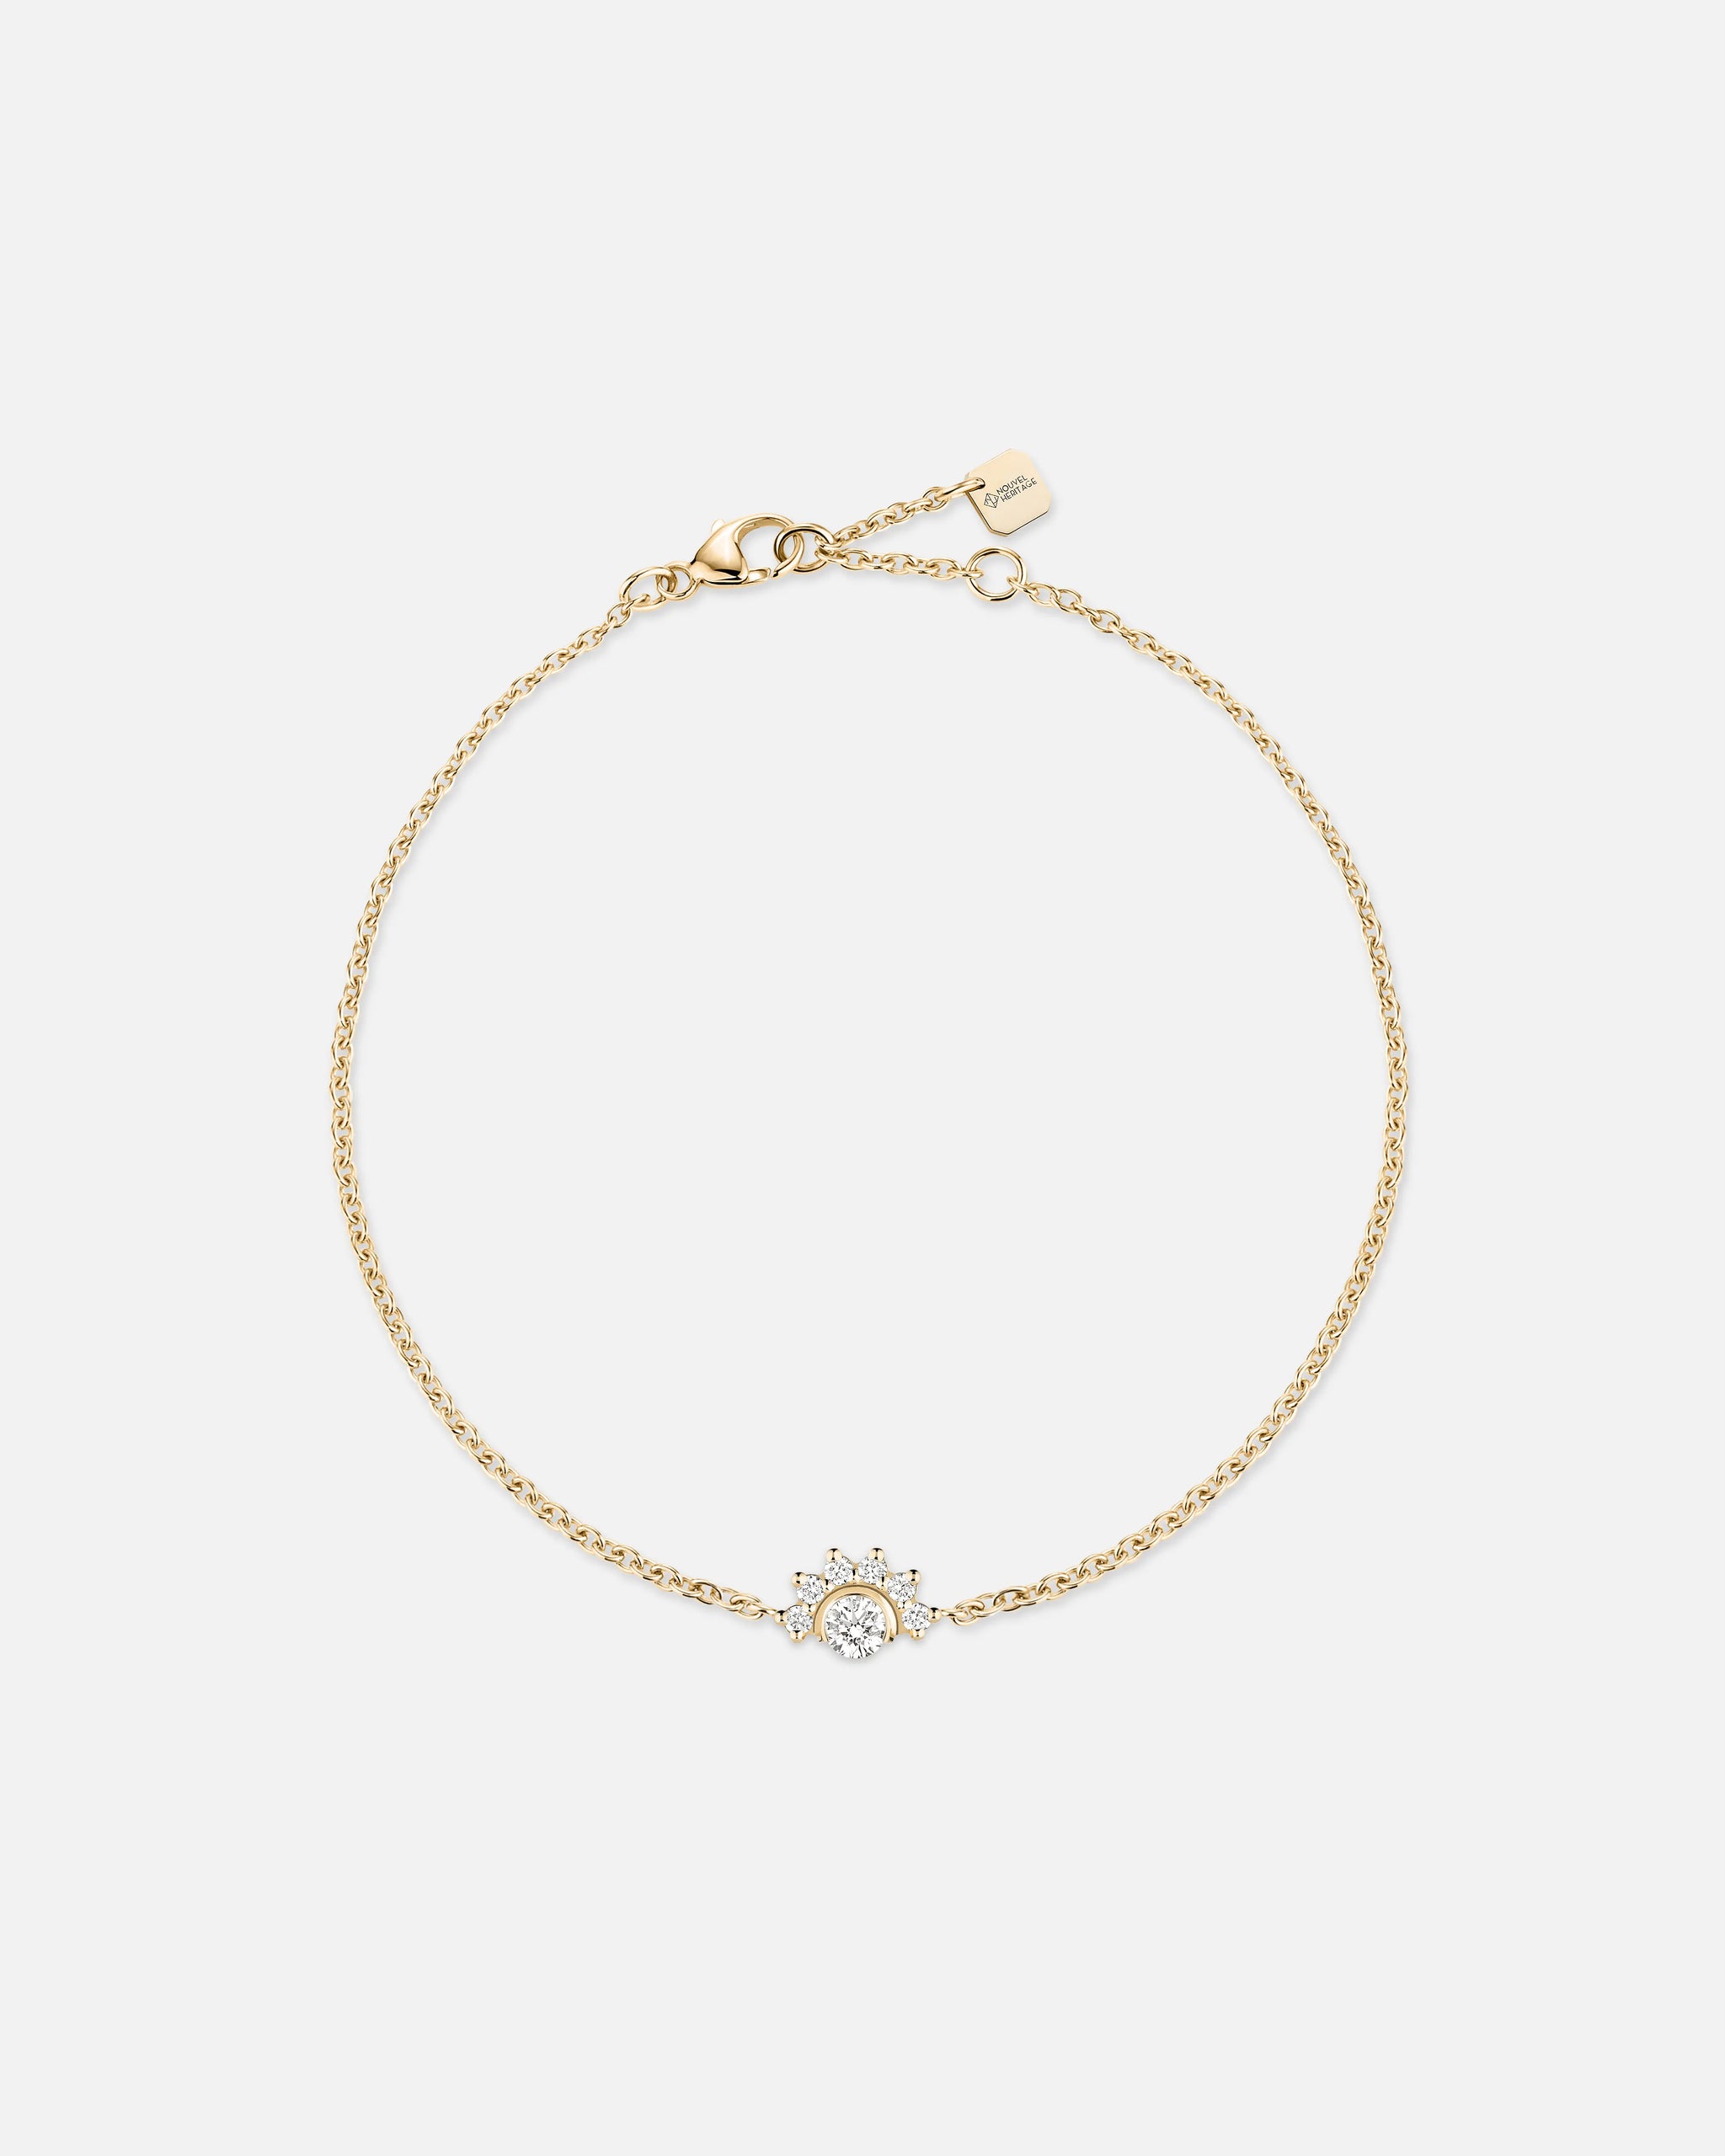 Bracelet Mystic Diamant en Or Jaune - 1 - Nouvel Heritage